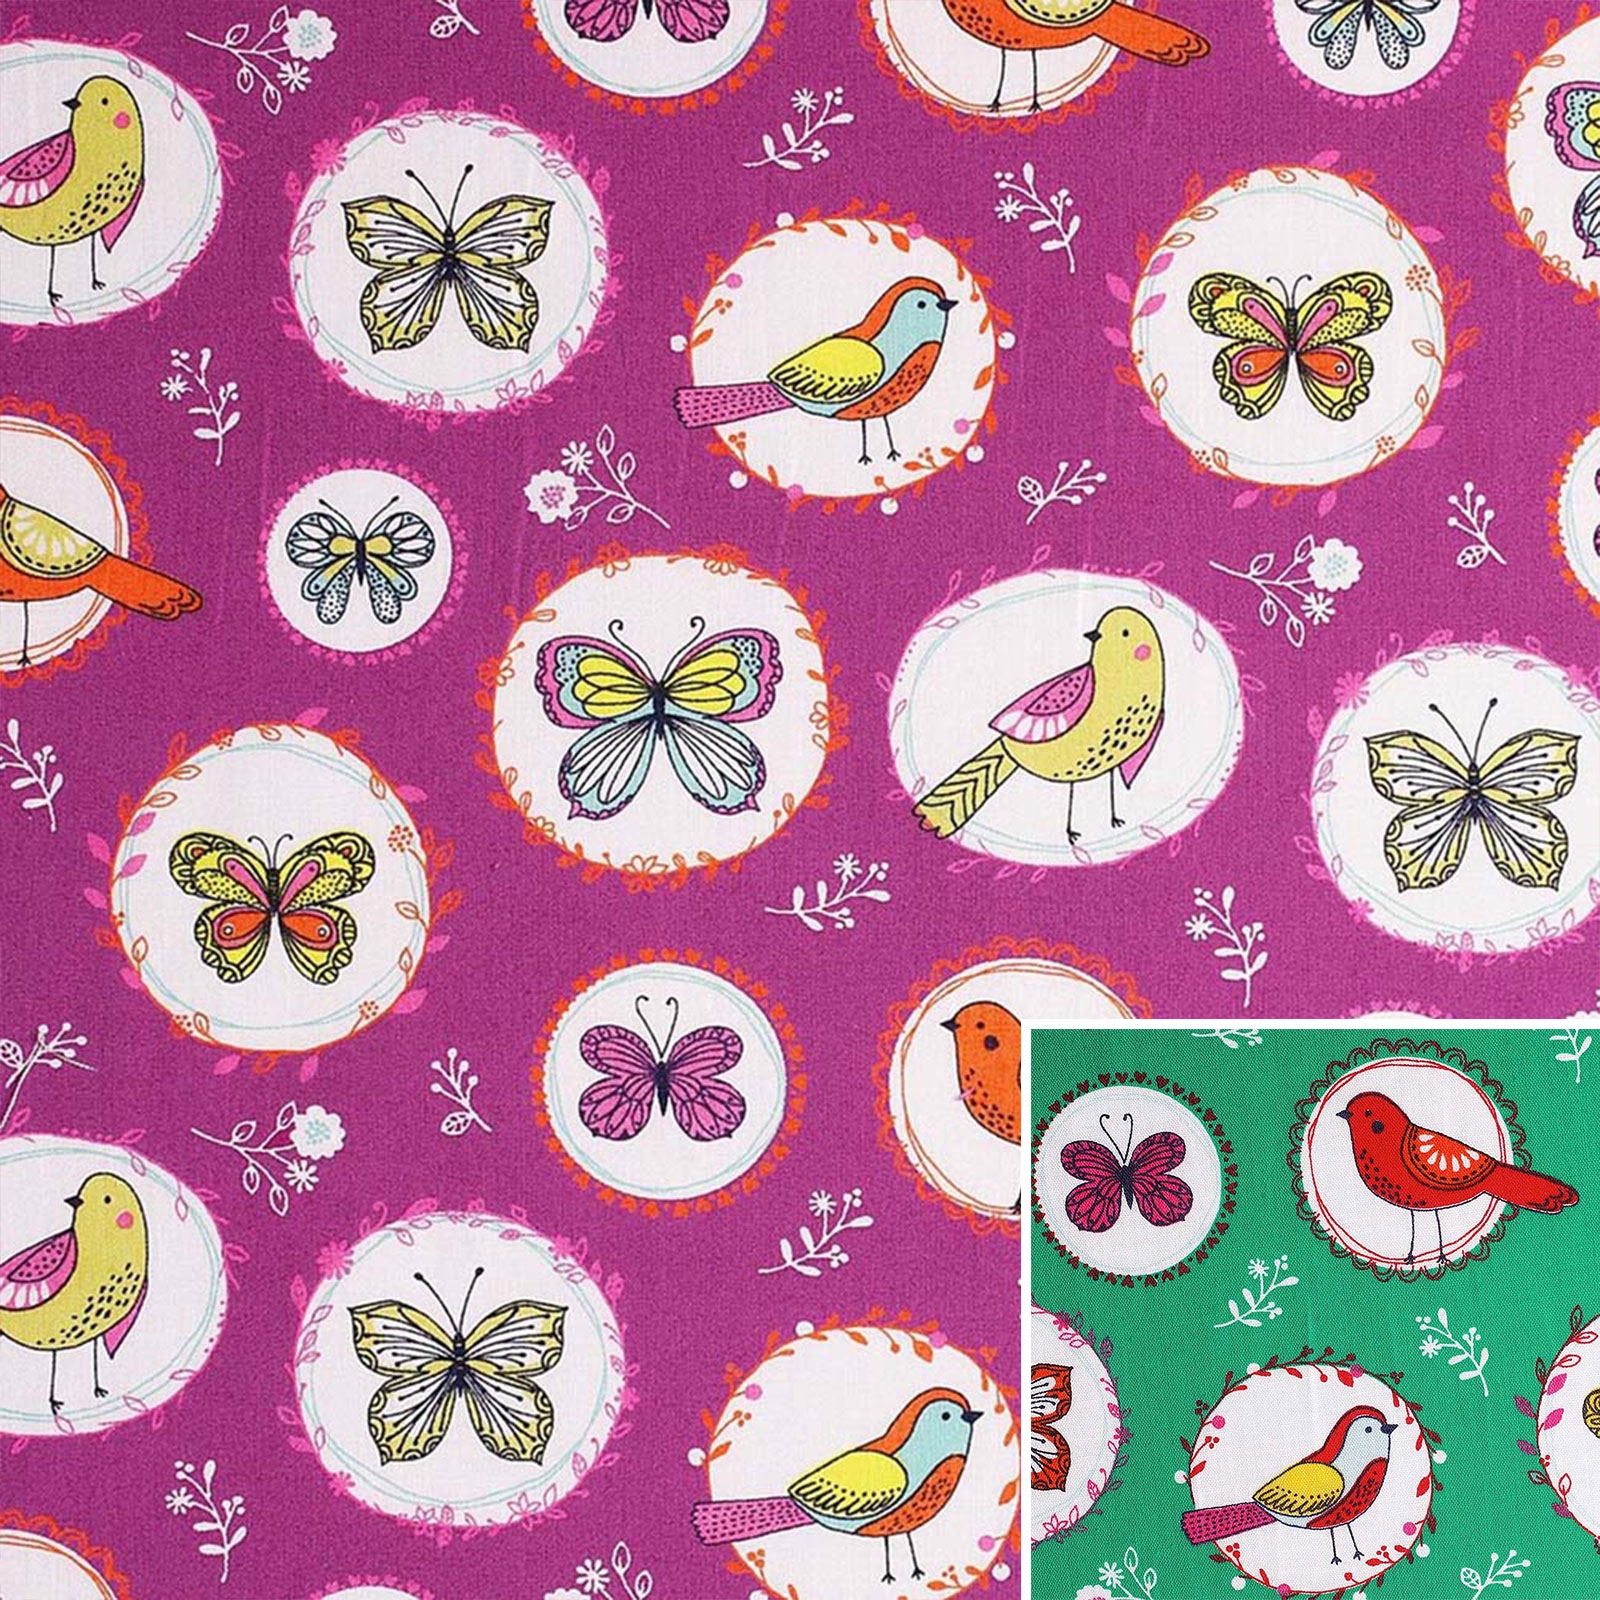 Birdy – Tela de algodón con pájaros y mariposas